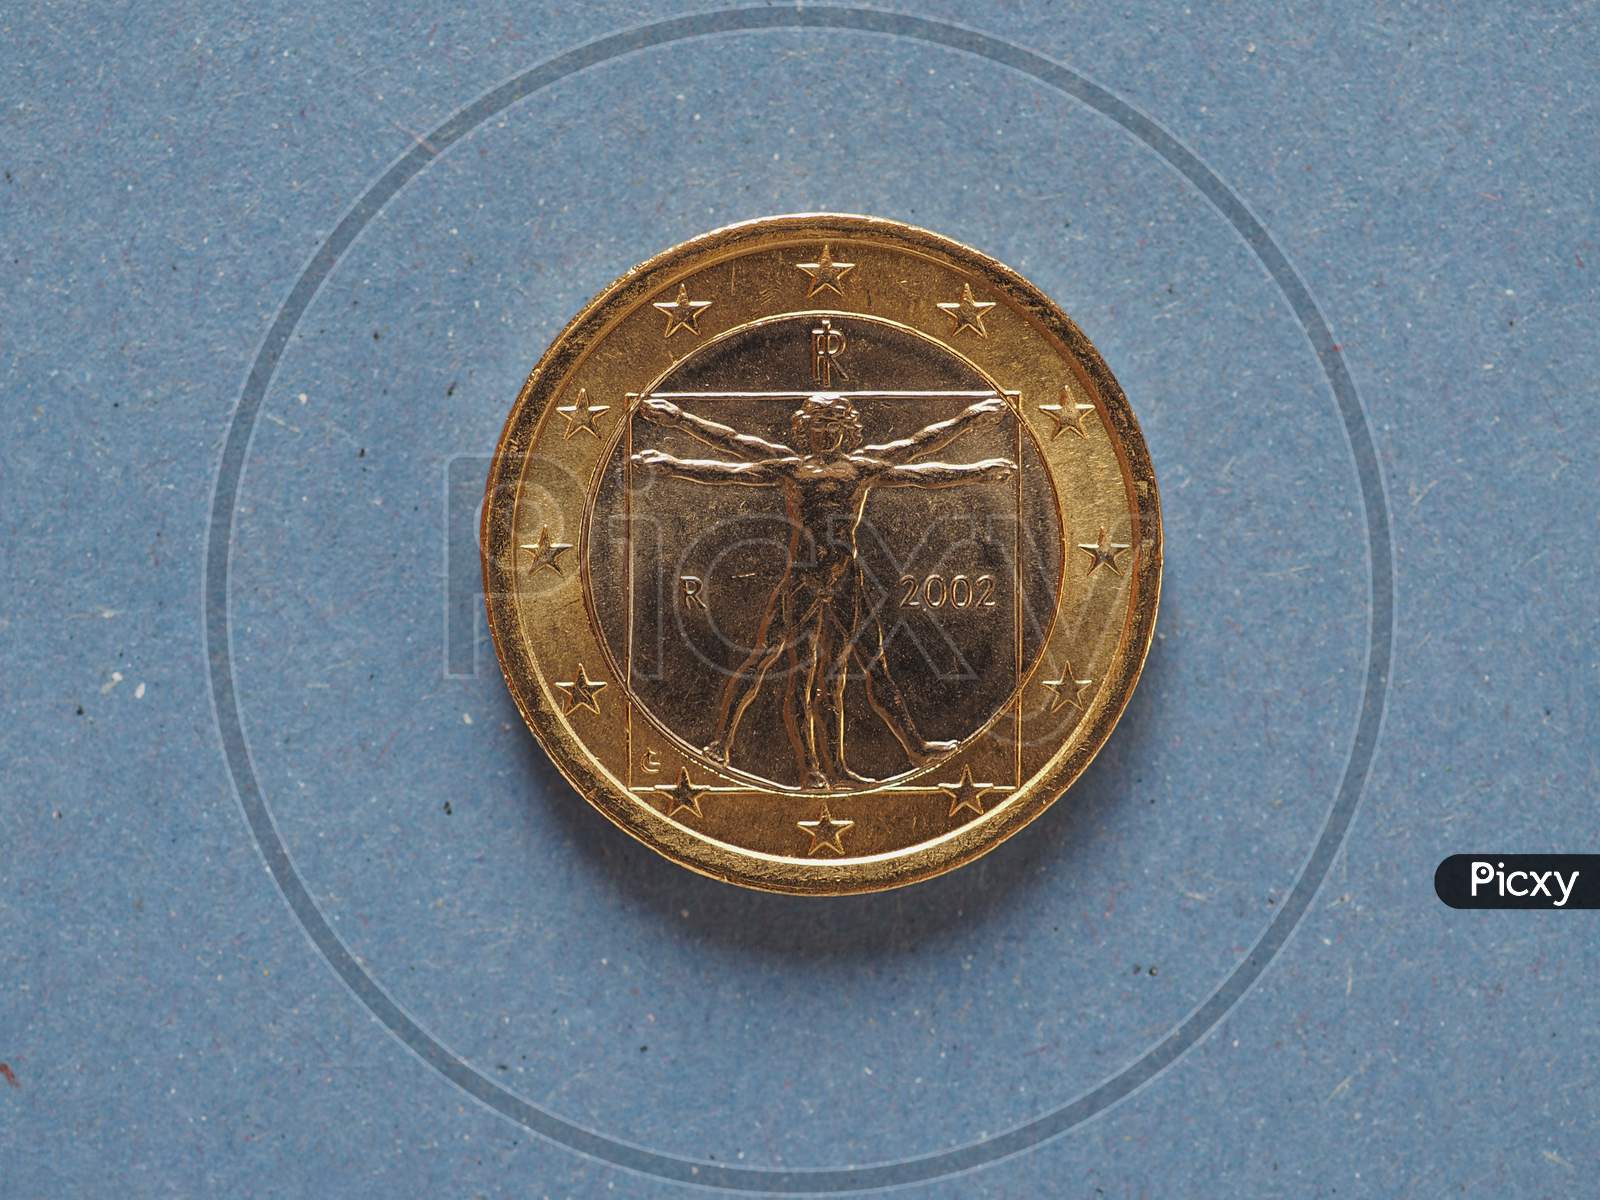 1 Euro Coin, European Union, Italy Over Blue